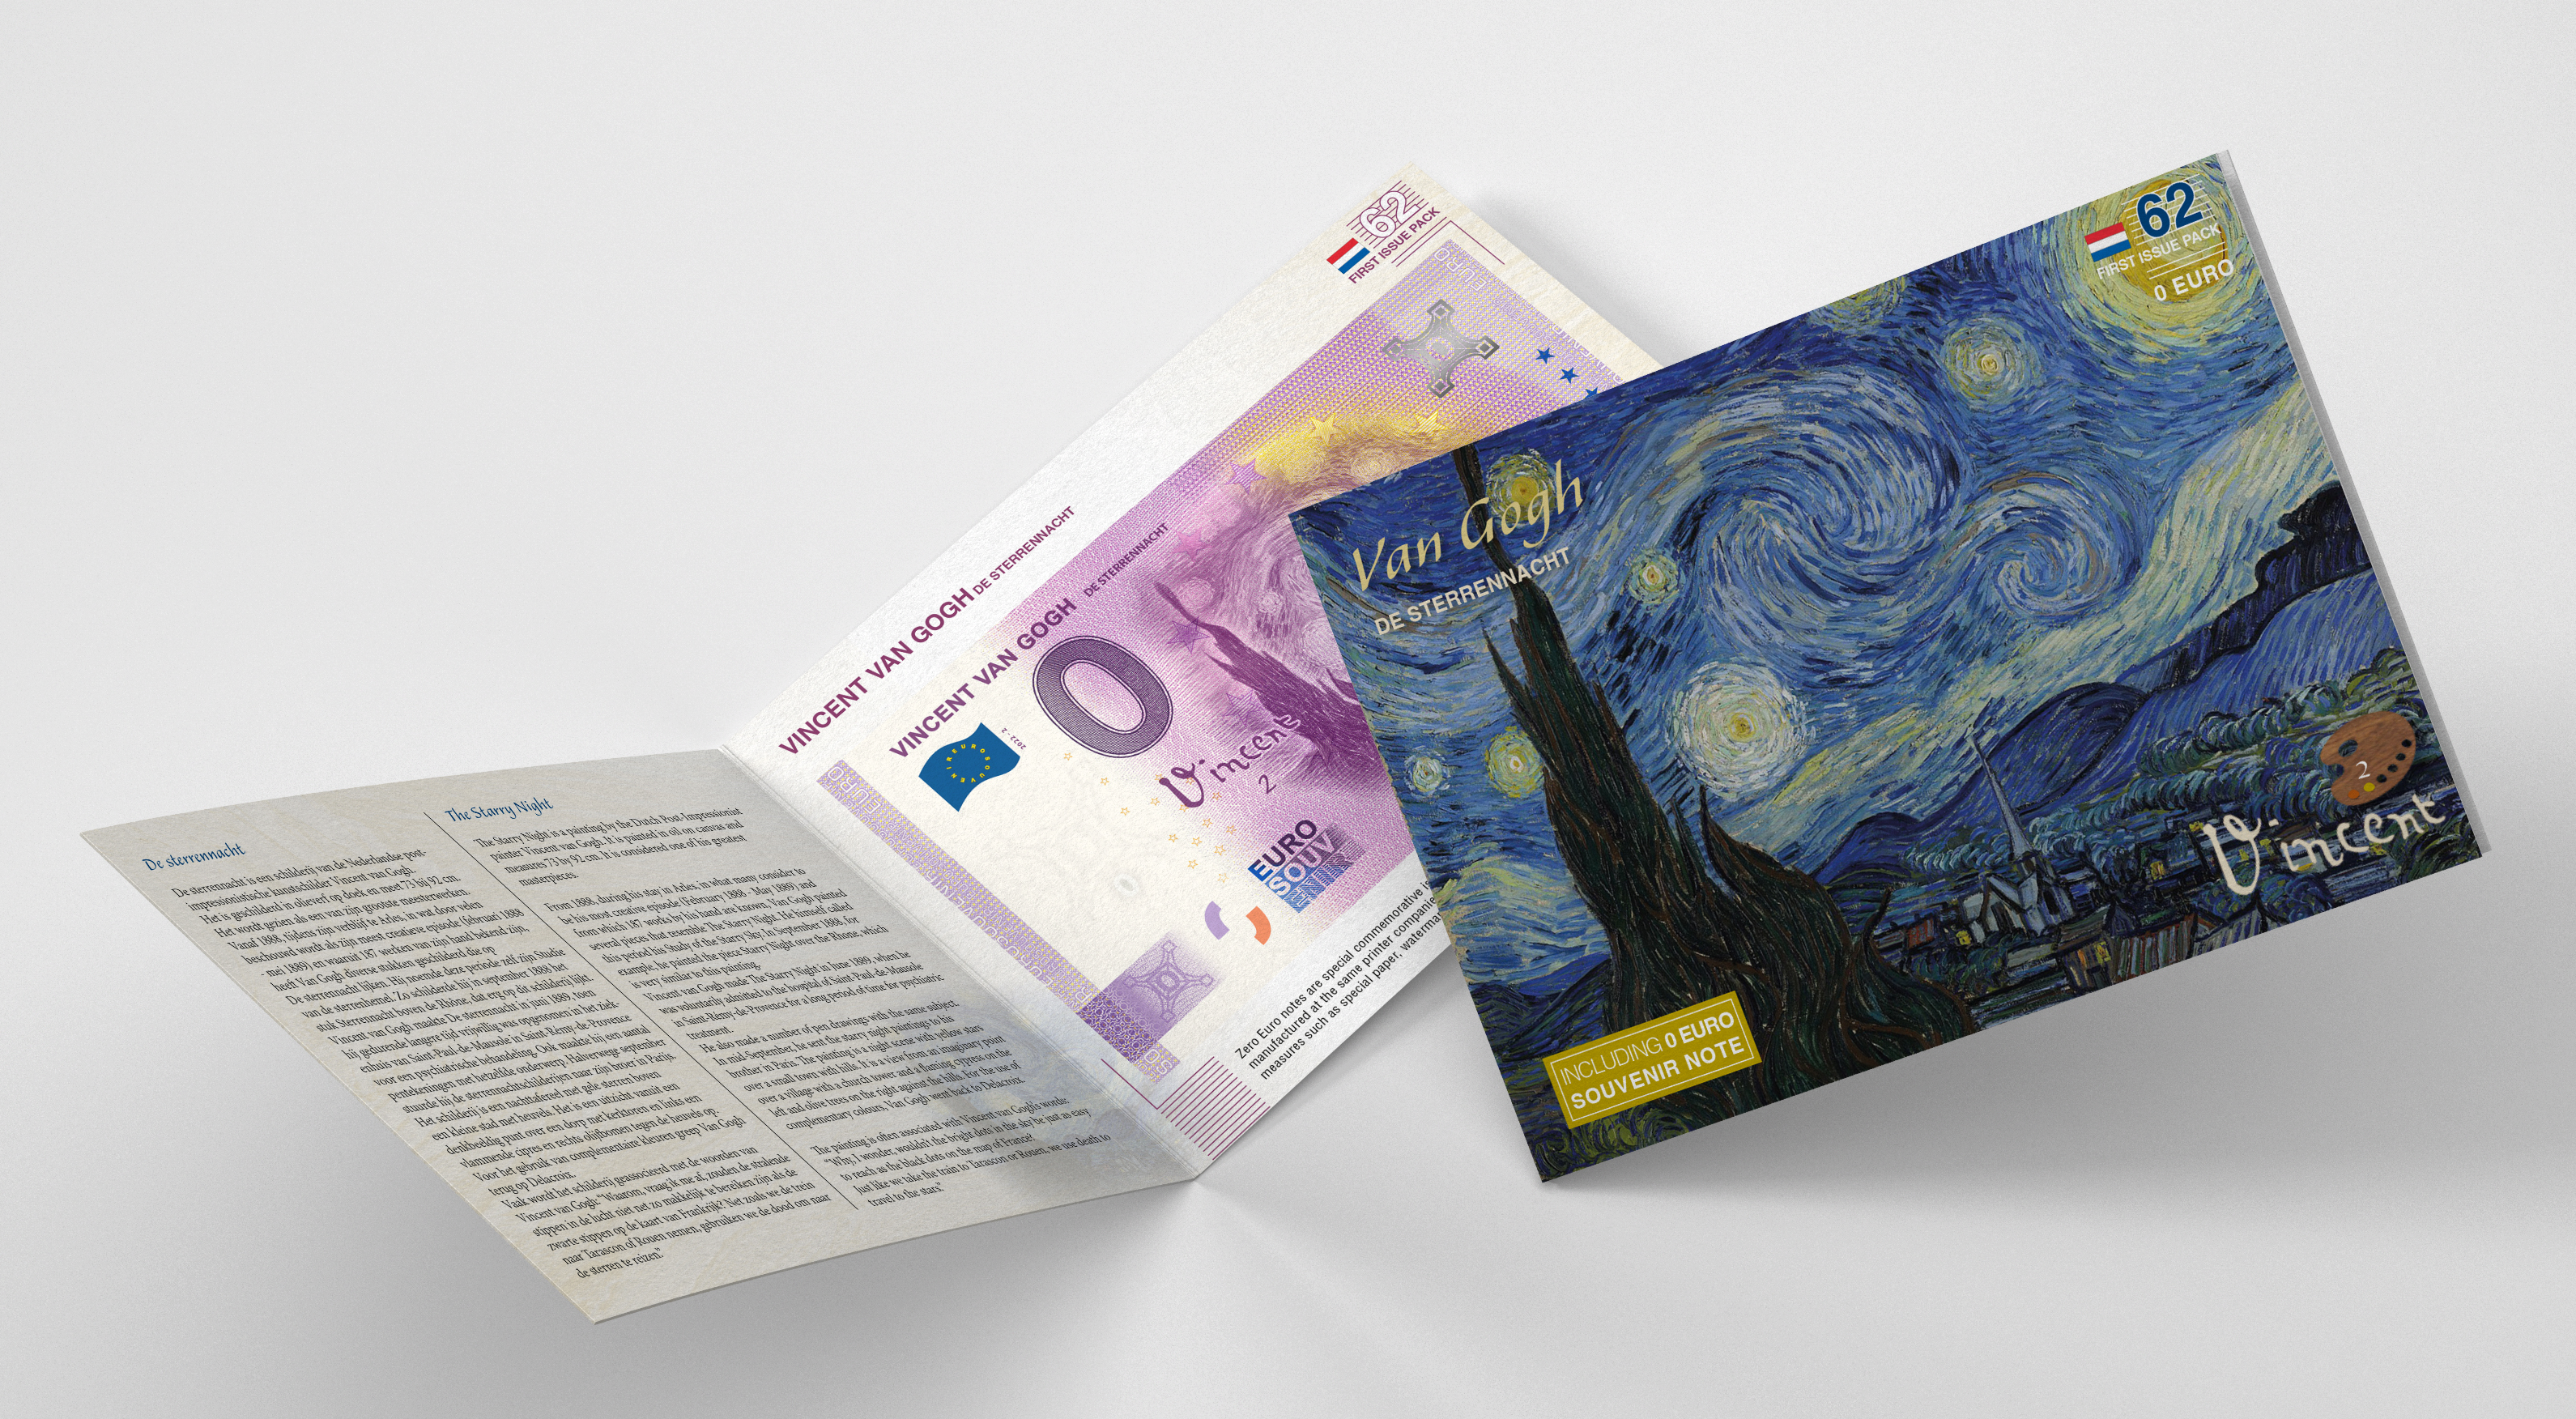 First Issue Pack #62 Van Gogh De Sterrennacht